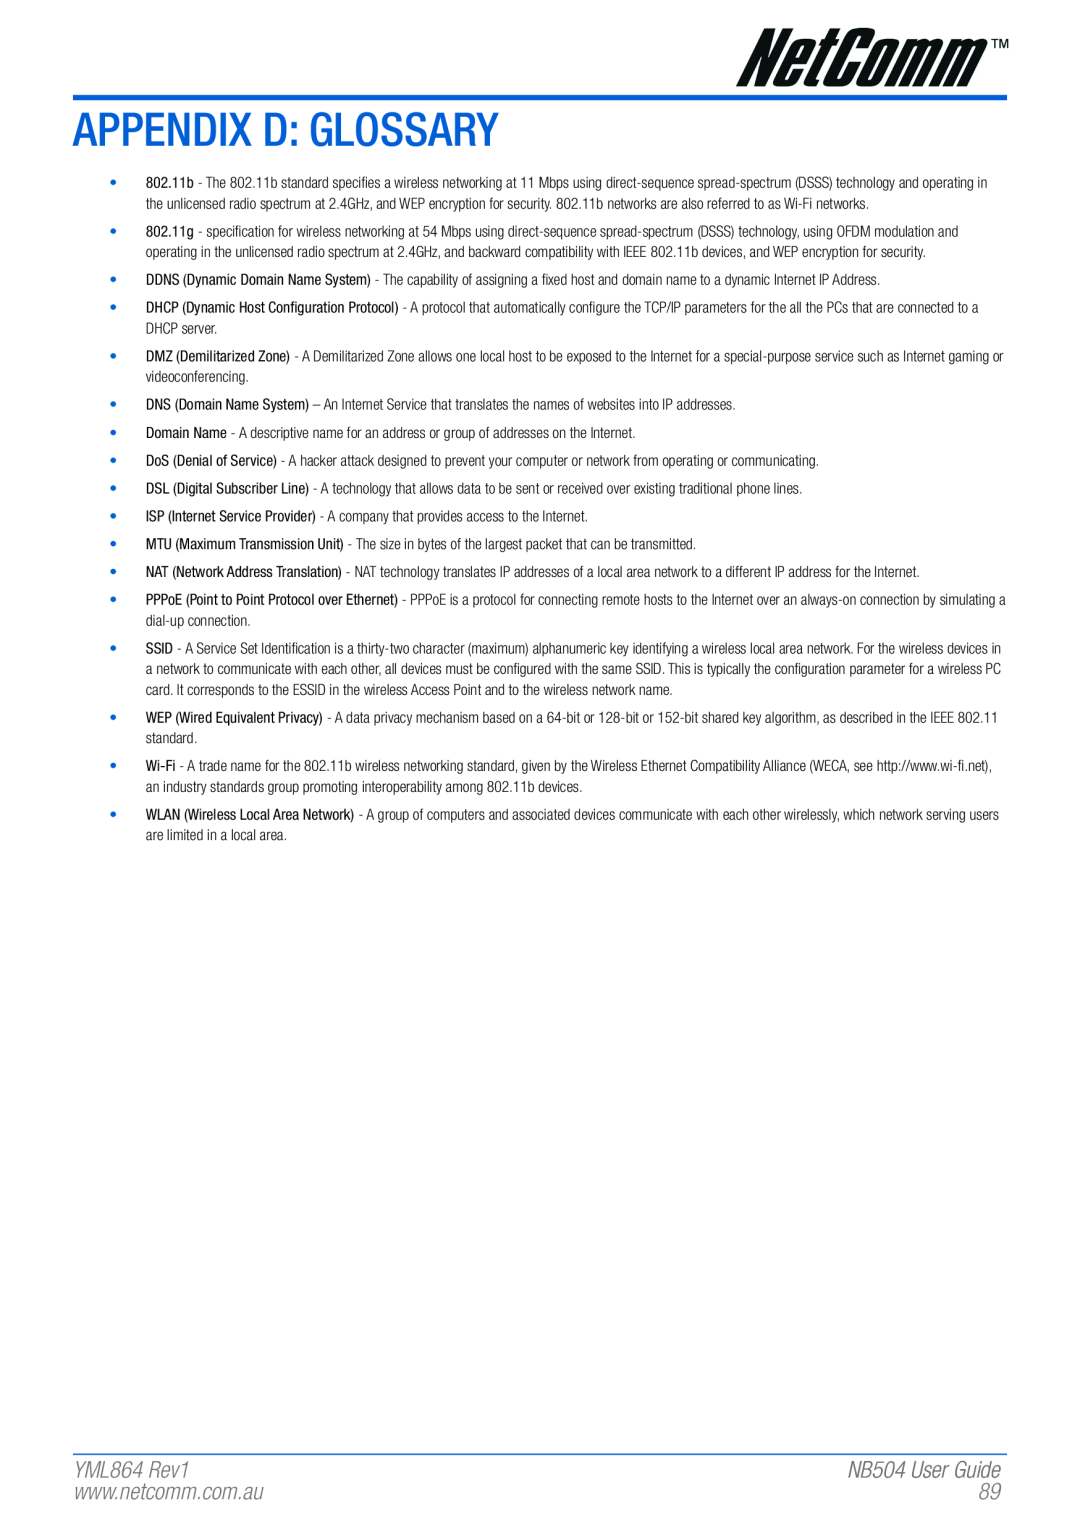 NetComm manual Appendix D Glossary, YML864 Rev1, NB504 User Guide 